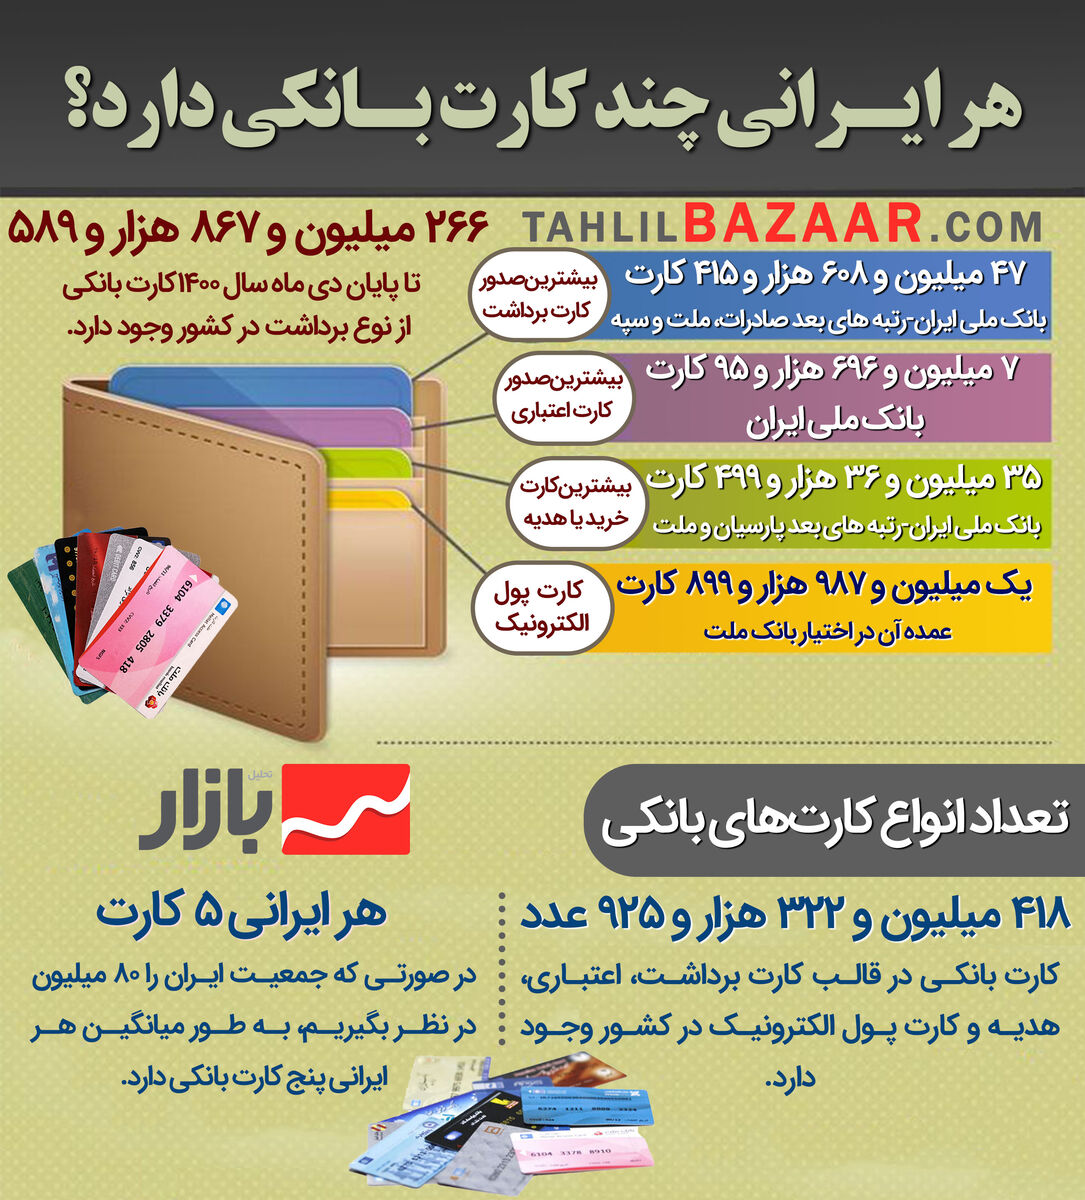 هر ایرانی چند کارت بانکی دارد؟